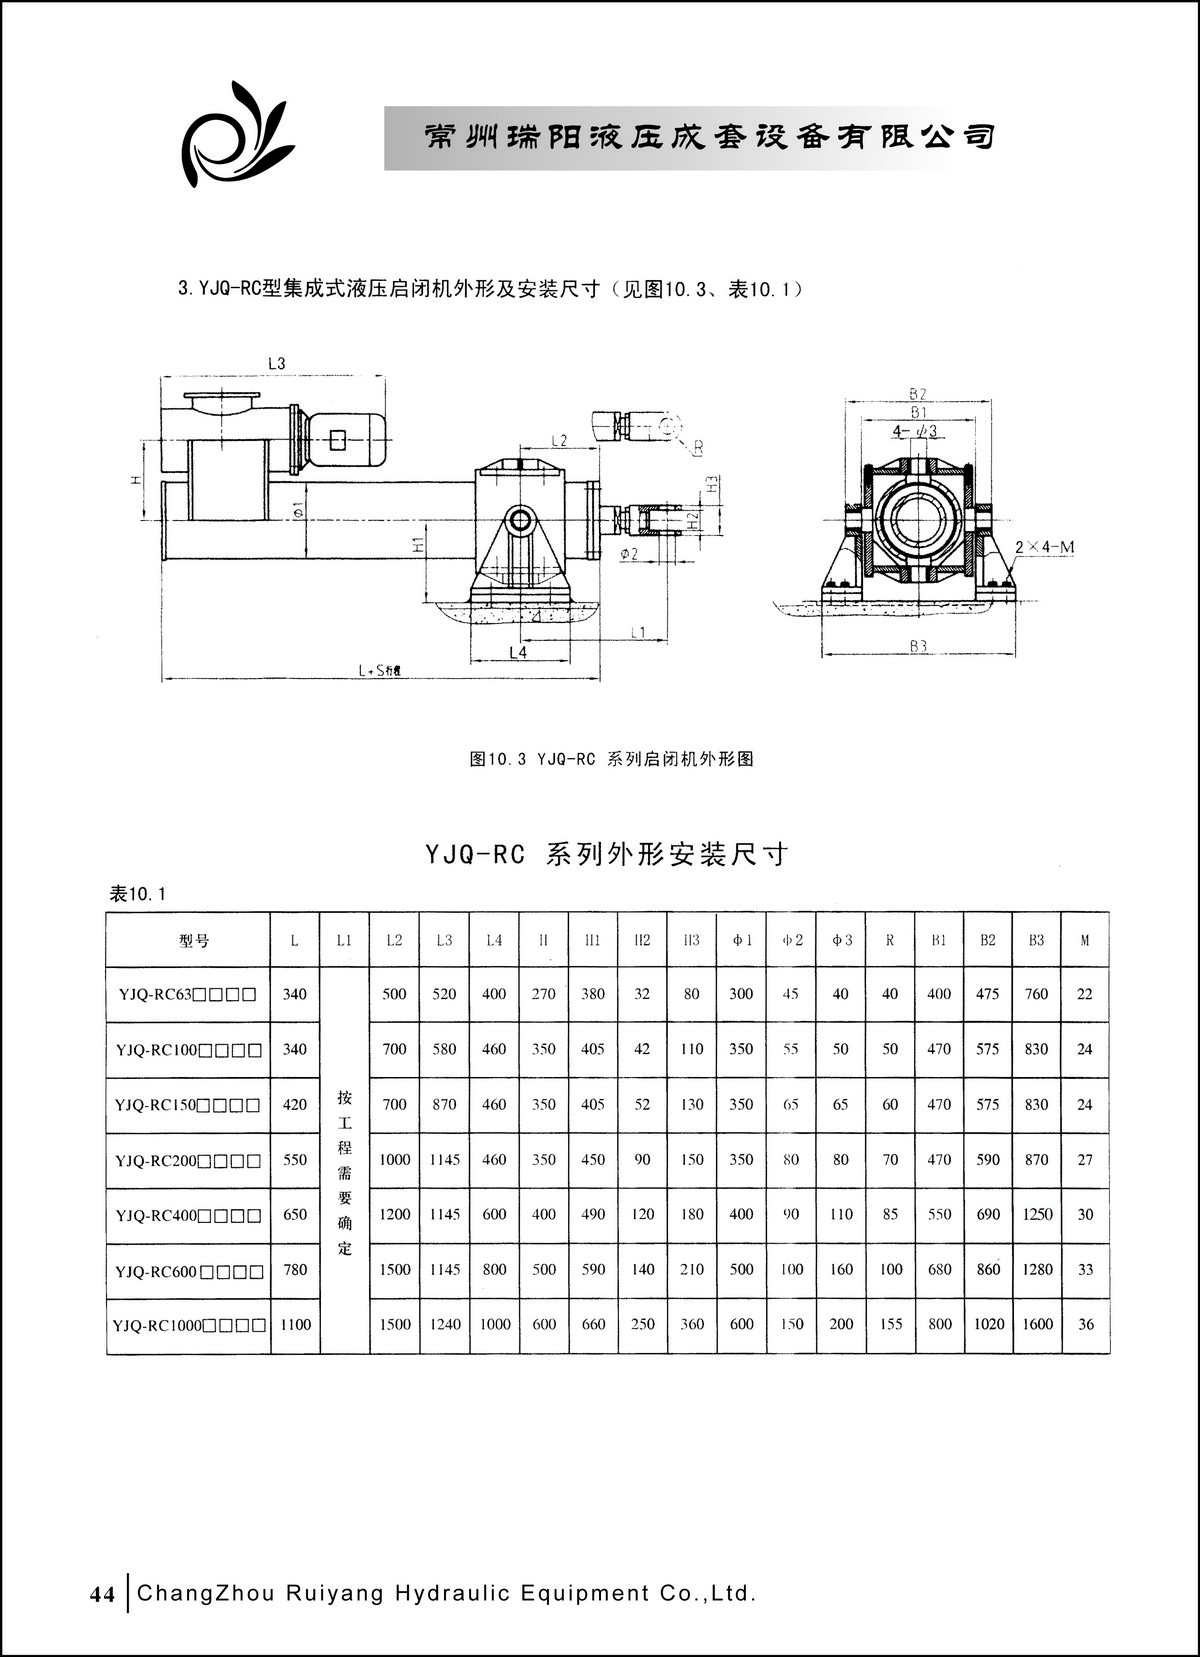 常州瑞阳液压成套设备有限公司产品样本2_页面_44.JPG